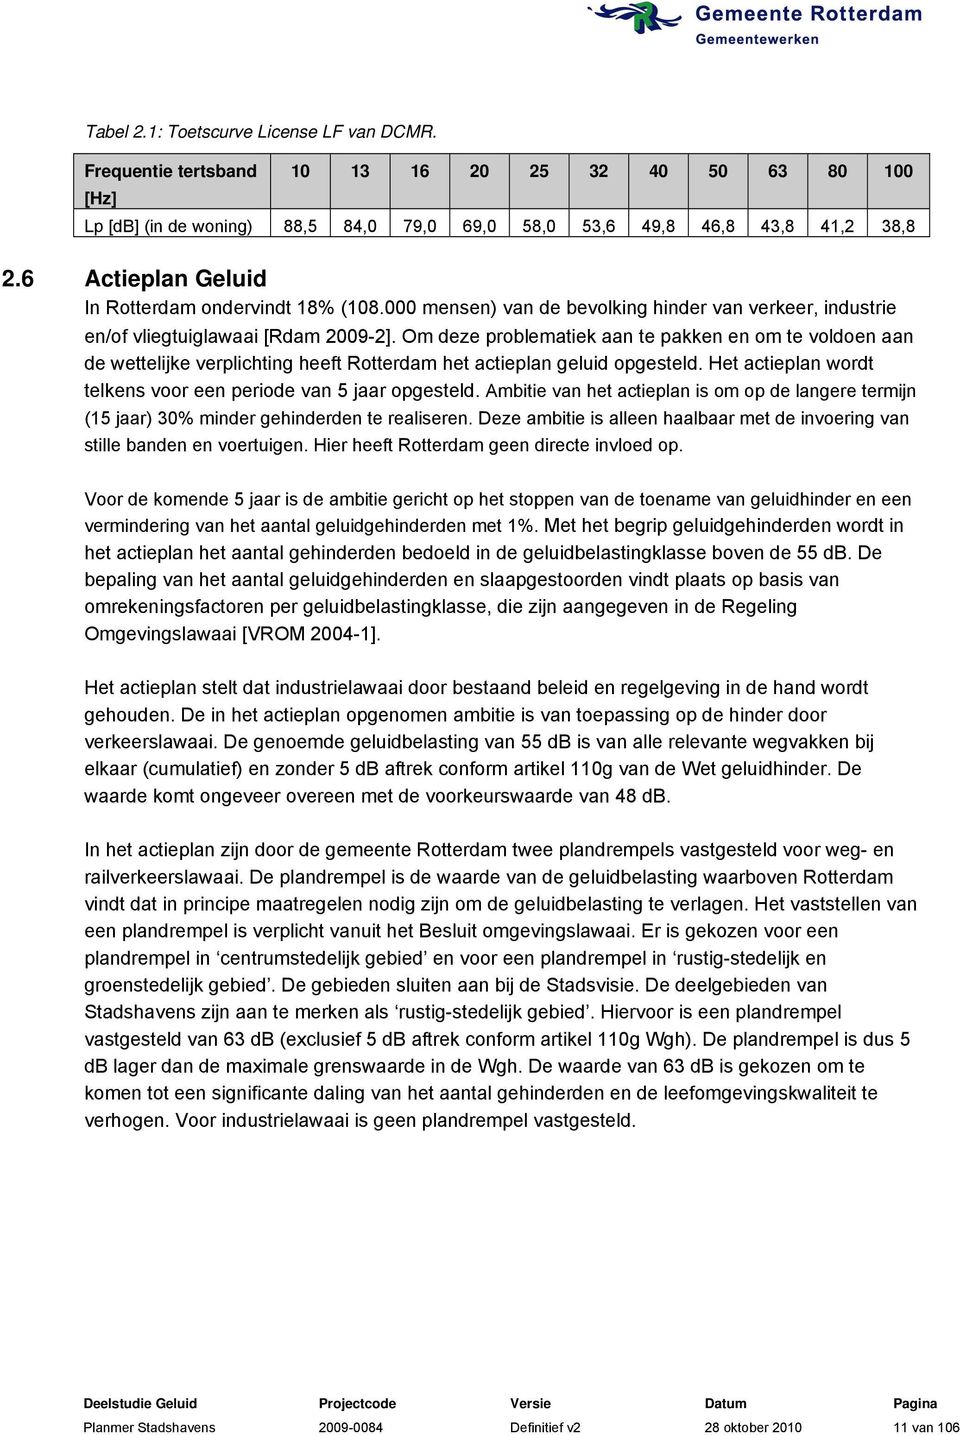 Om deze problematiek aan te pakken en om te voldoen aan de wettelijke verplichting heeft Rotterdam het actieplan geluid opgesteld. Het actieplan wordt telkens voor een periode van 5 jaar opgesteld.